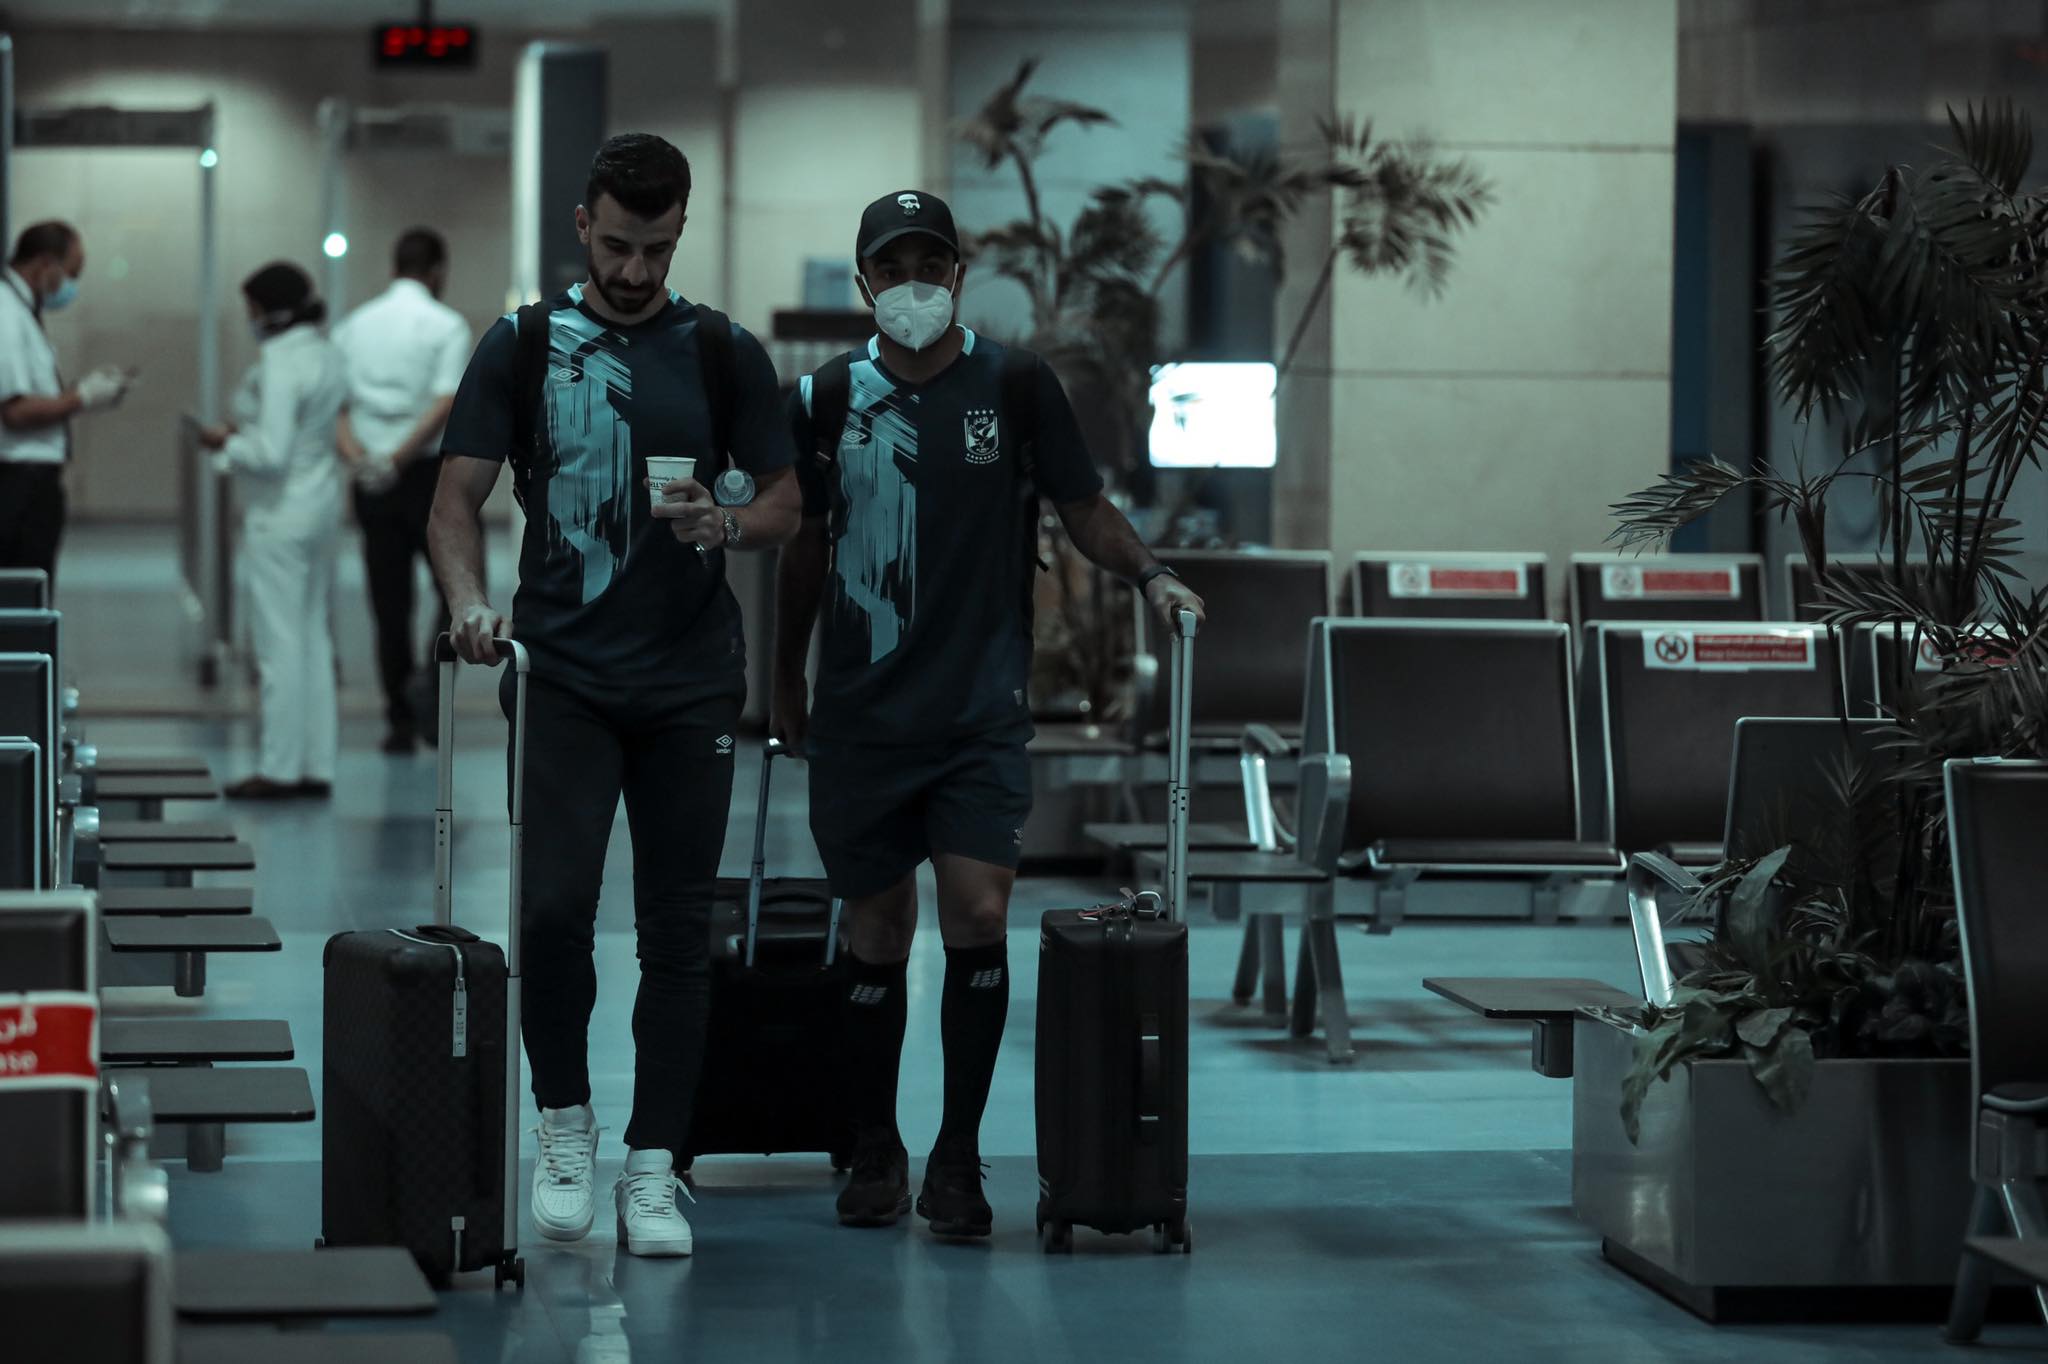 دوري أبطال إفريقيا| بعثة الأهلي تغادر مطار القاهرة متوجهة إلى جنوب إفريقيا